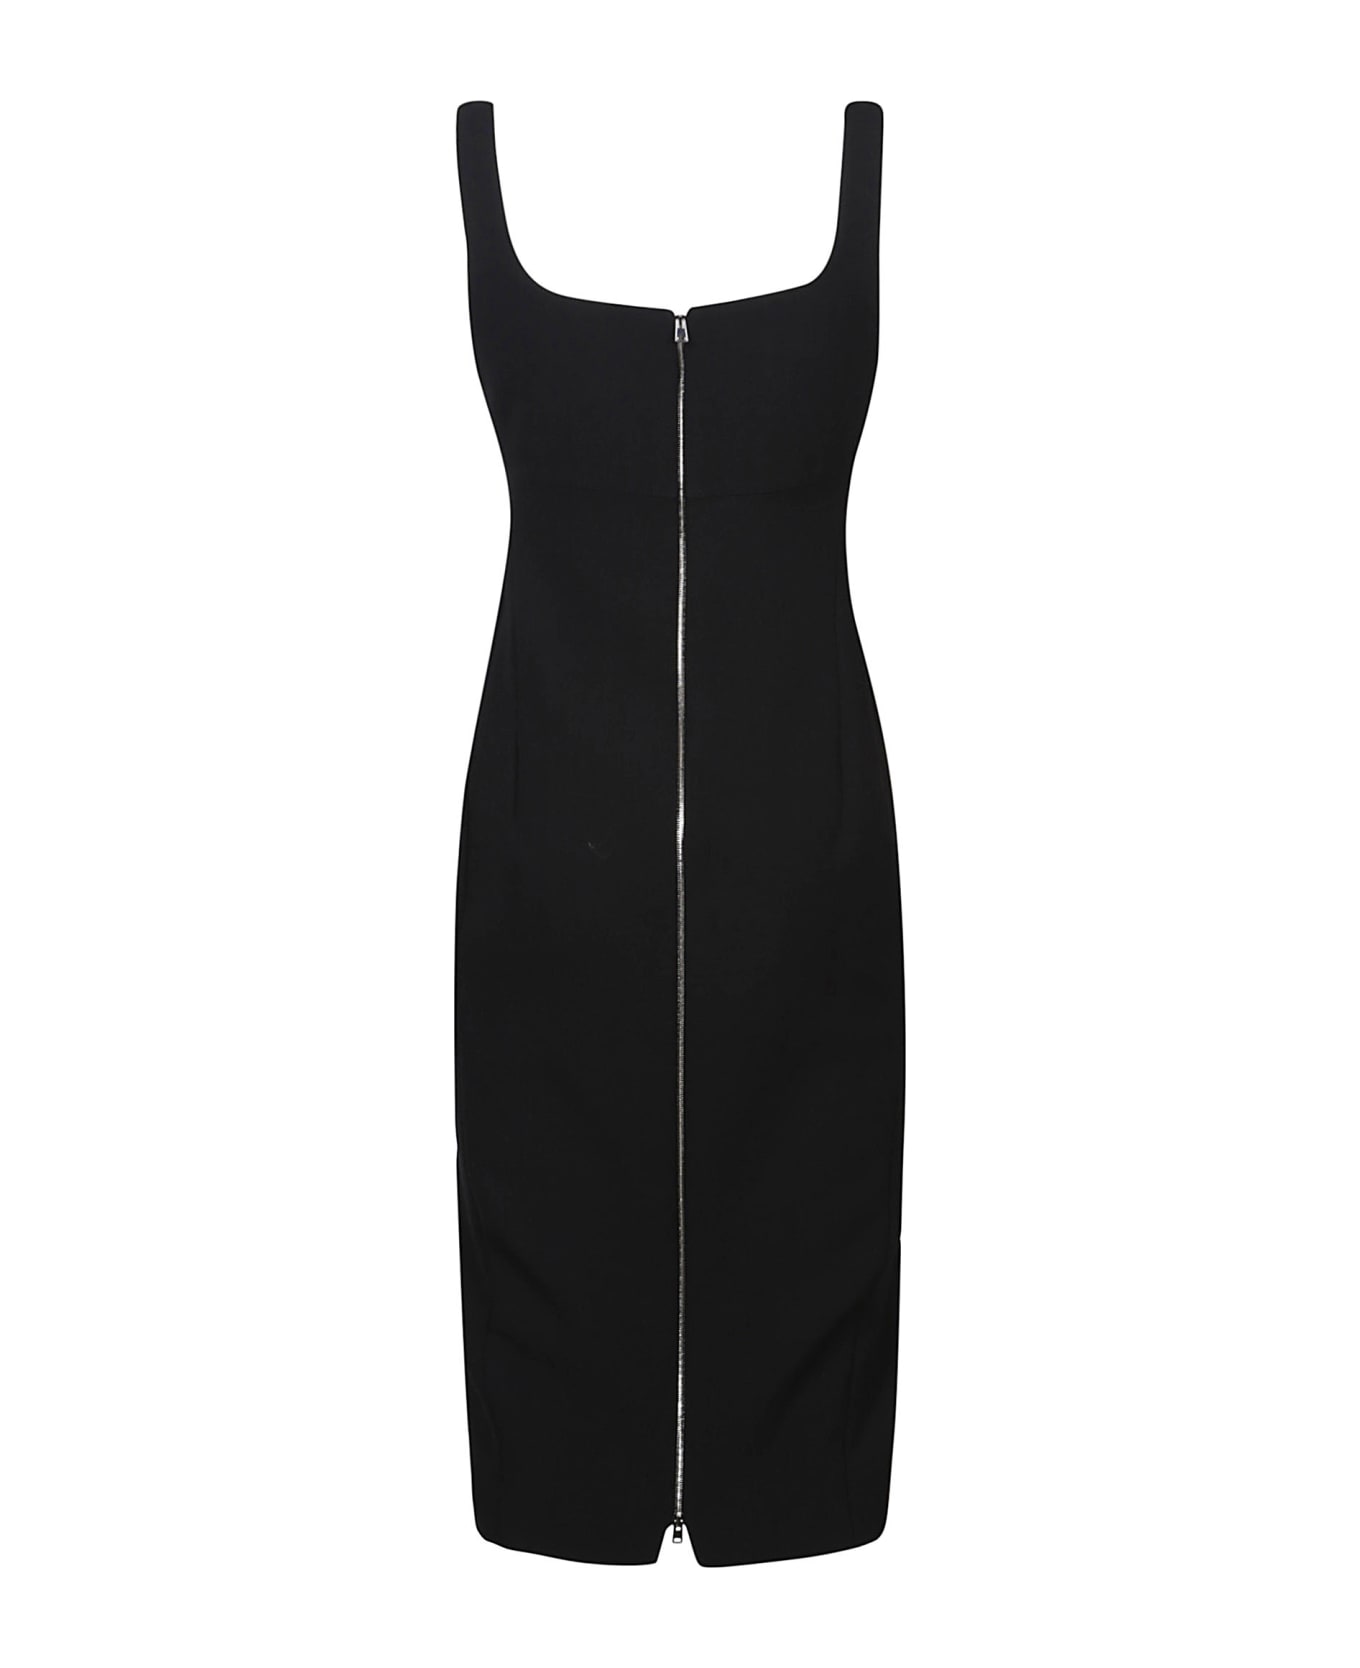 Victoria Beckham Sleeveless Fitted T-shirt Dress - Black